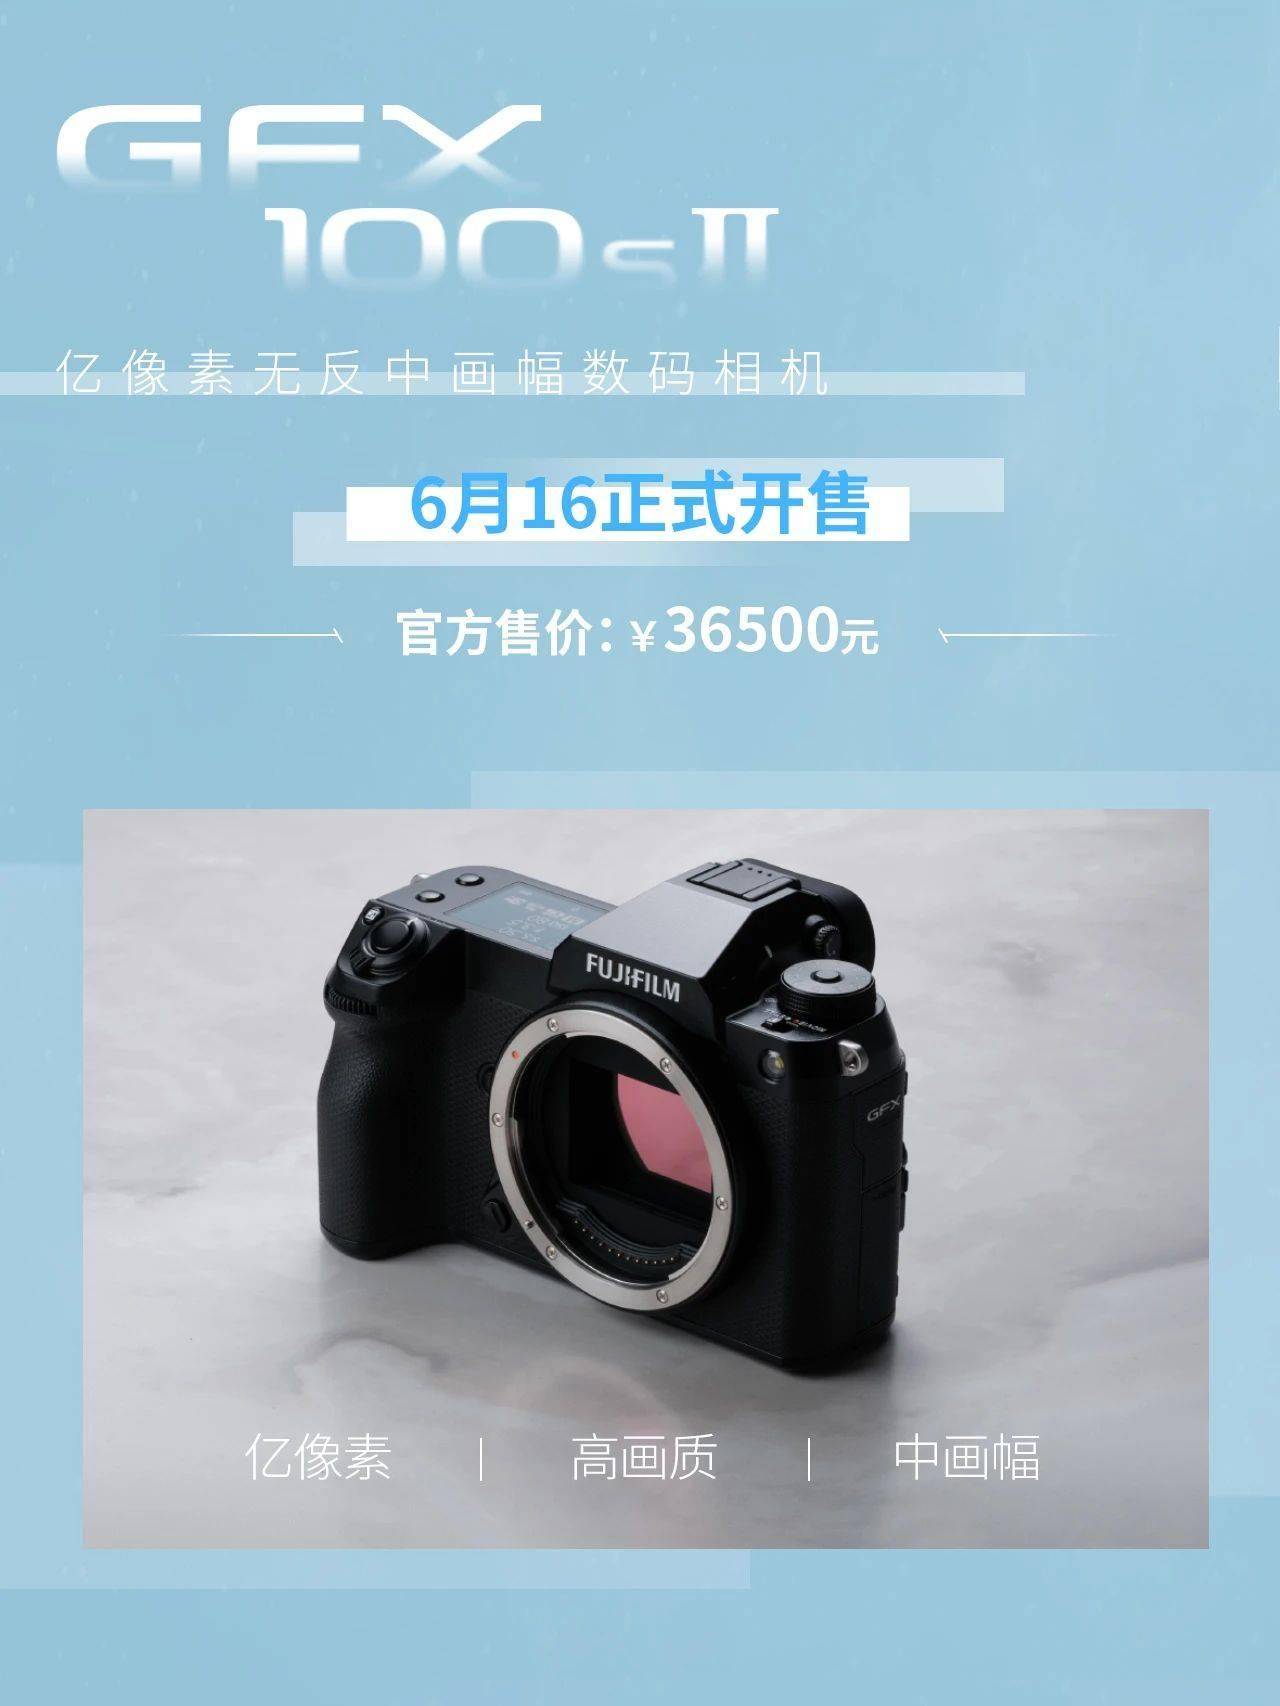 富士GFX100SⅡ无反相机今日开售 搭载1.02亿像素的中画幅传感器